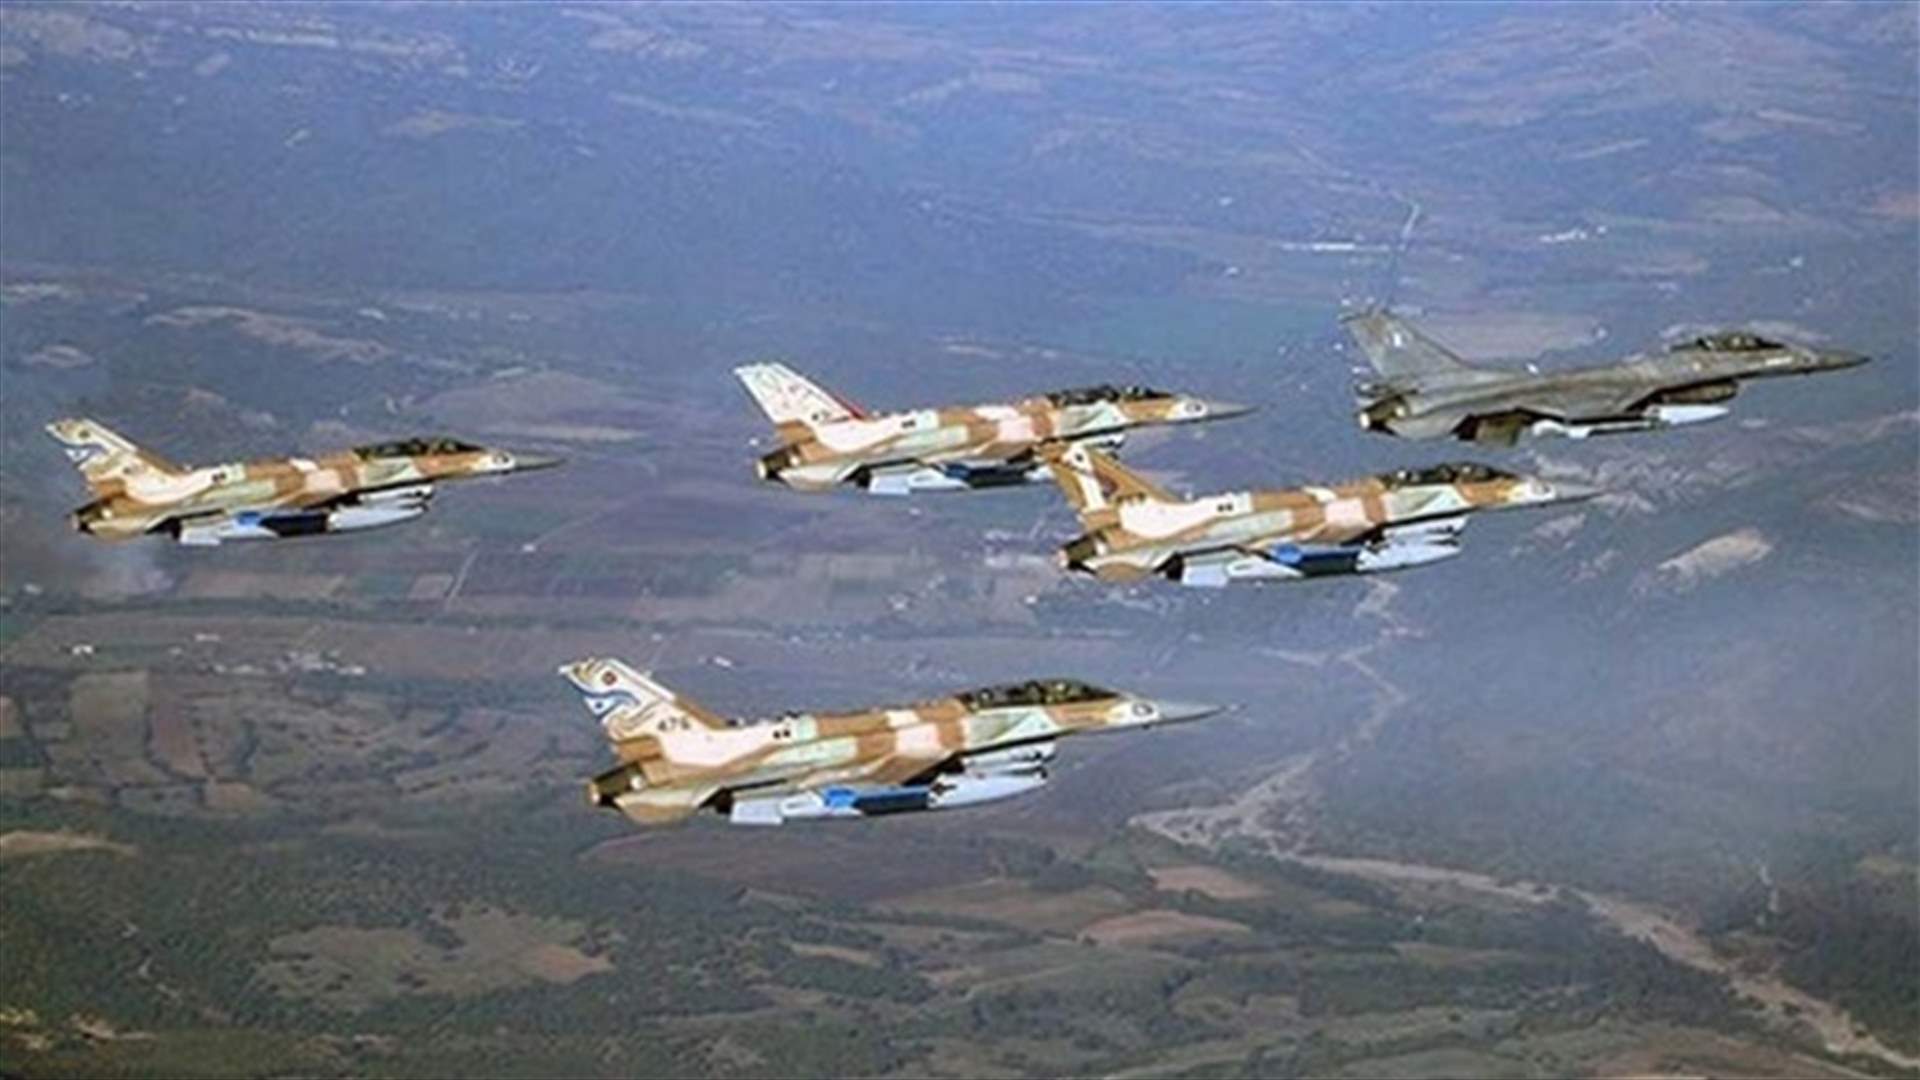 ما هو المسار اللبناني الذي سلكته الطائرات التي استهدفت مطار التيفور العسكري في سوريا؟